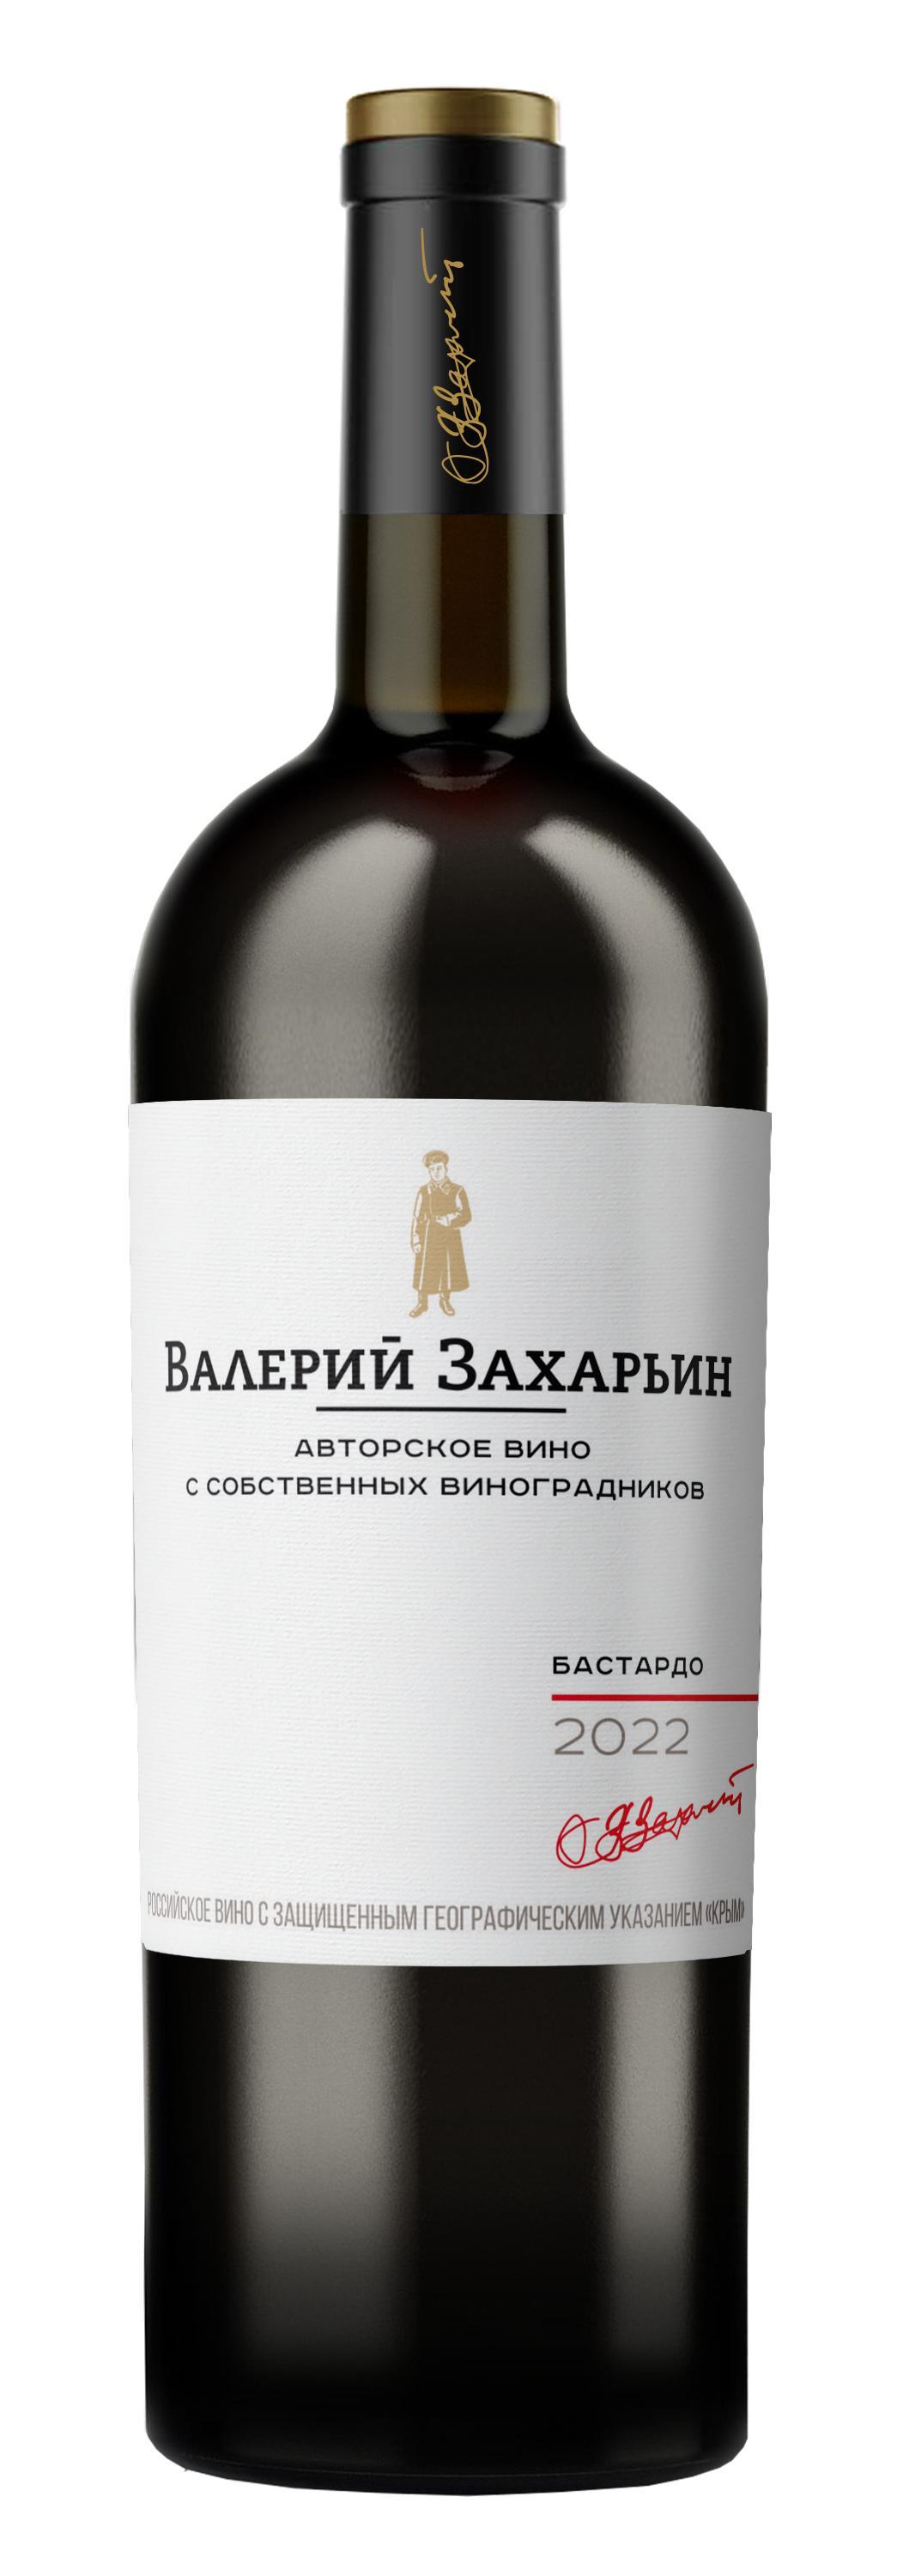 Вино ЗГУ Авторских вин Крыма от Валерия Захарьина Бастардо красное сухое 750мл, Винодельня Бурлюк